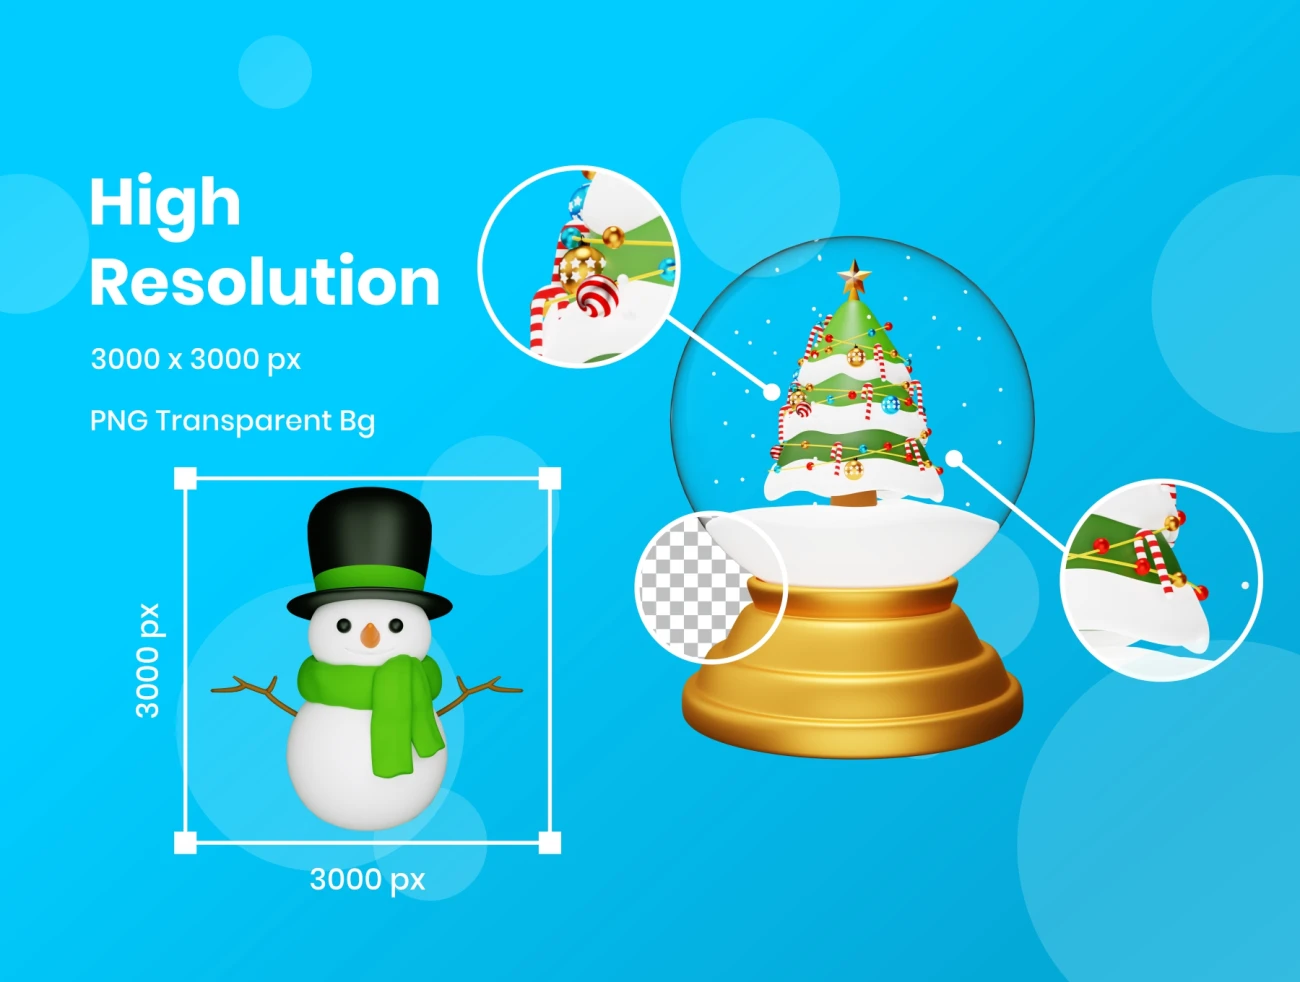 45款圣诞节3D图标 Christmas 3D icons .blend. psd. ai. xd. figma-3D/图标-到位啦UI